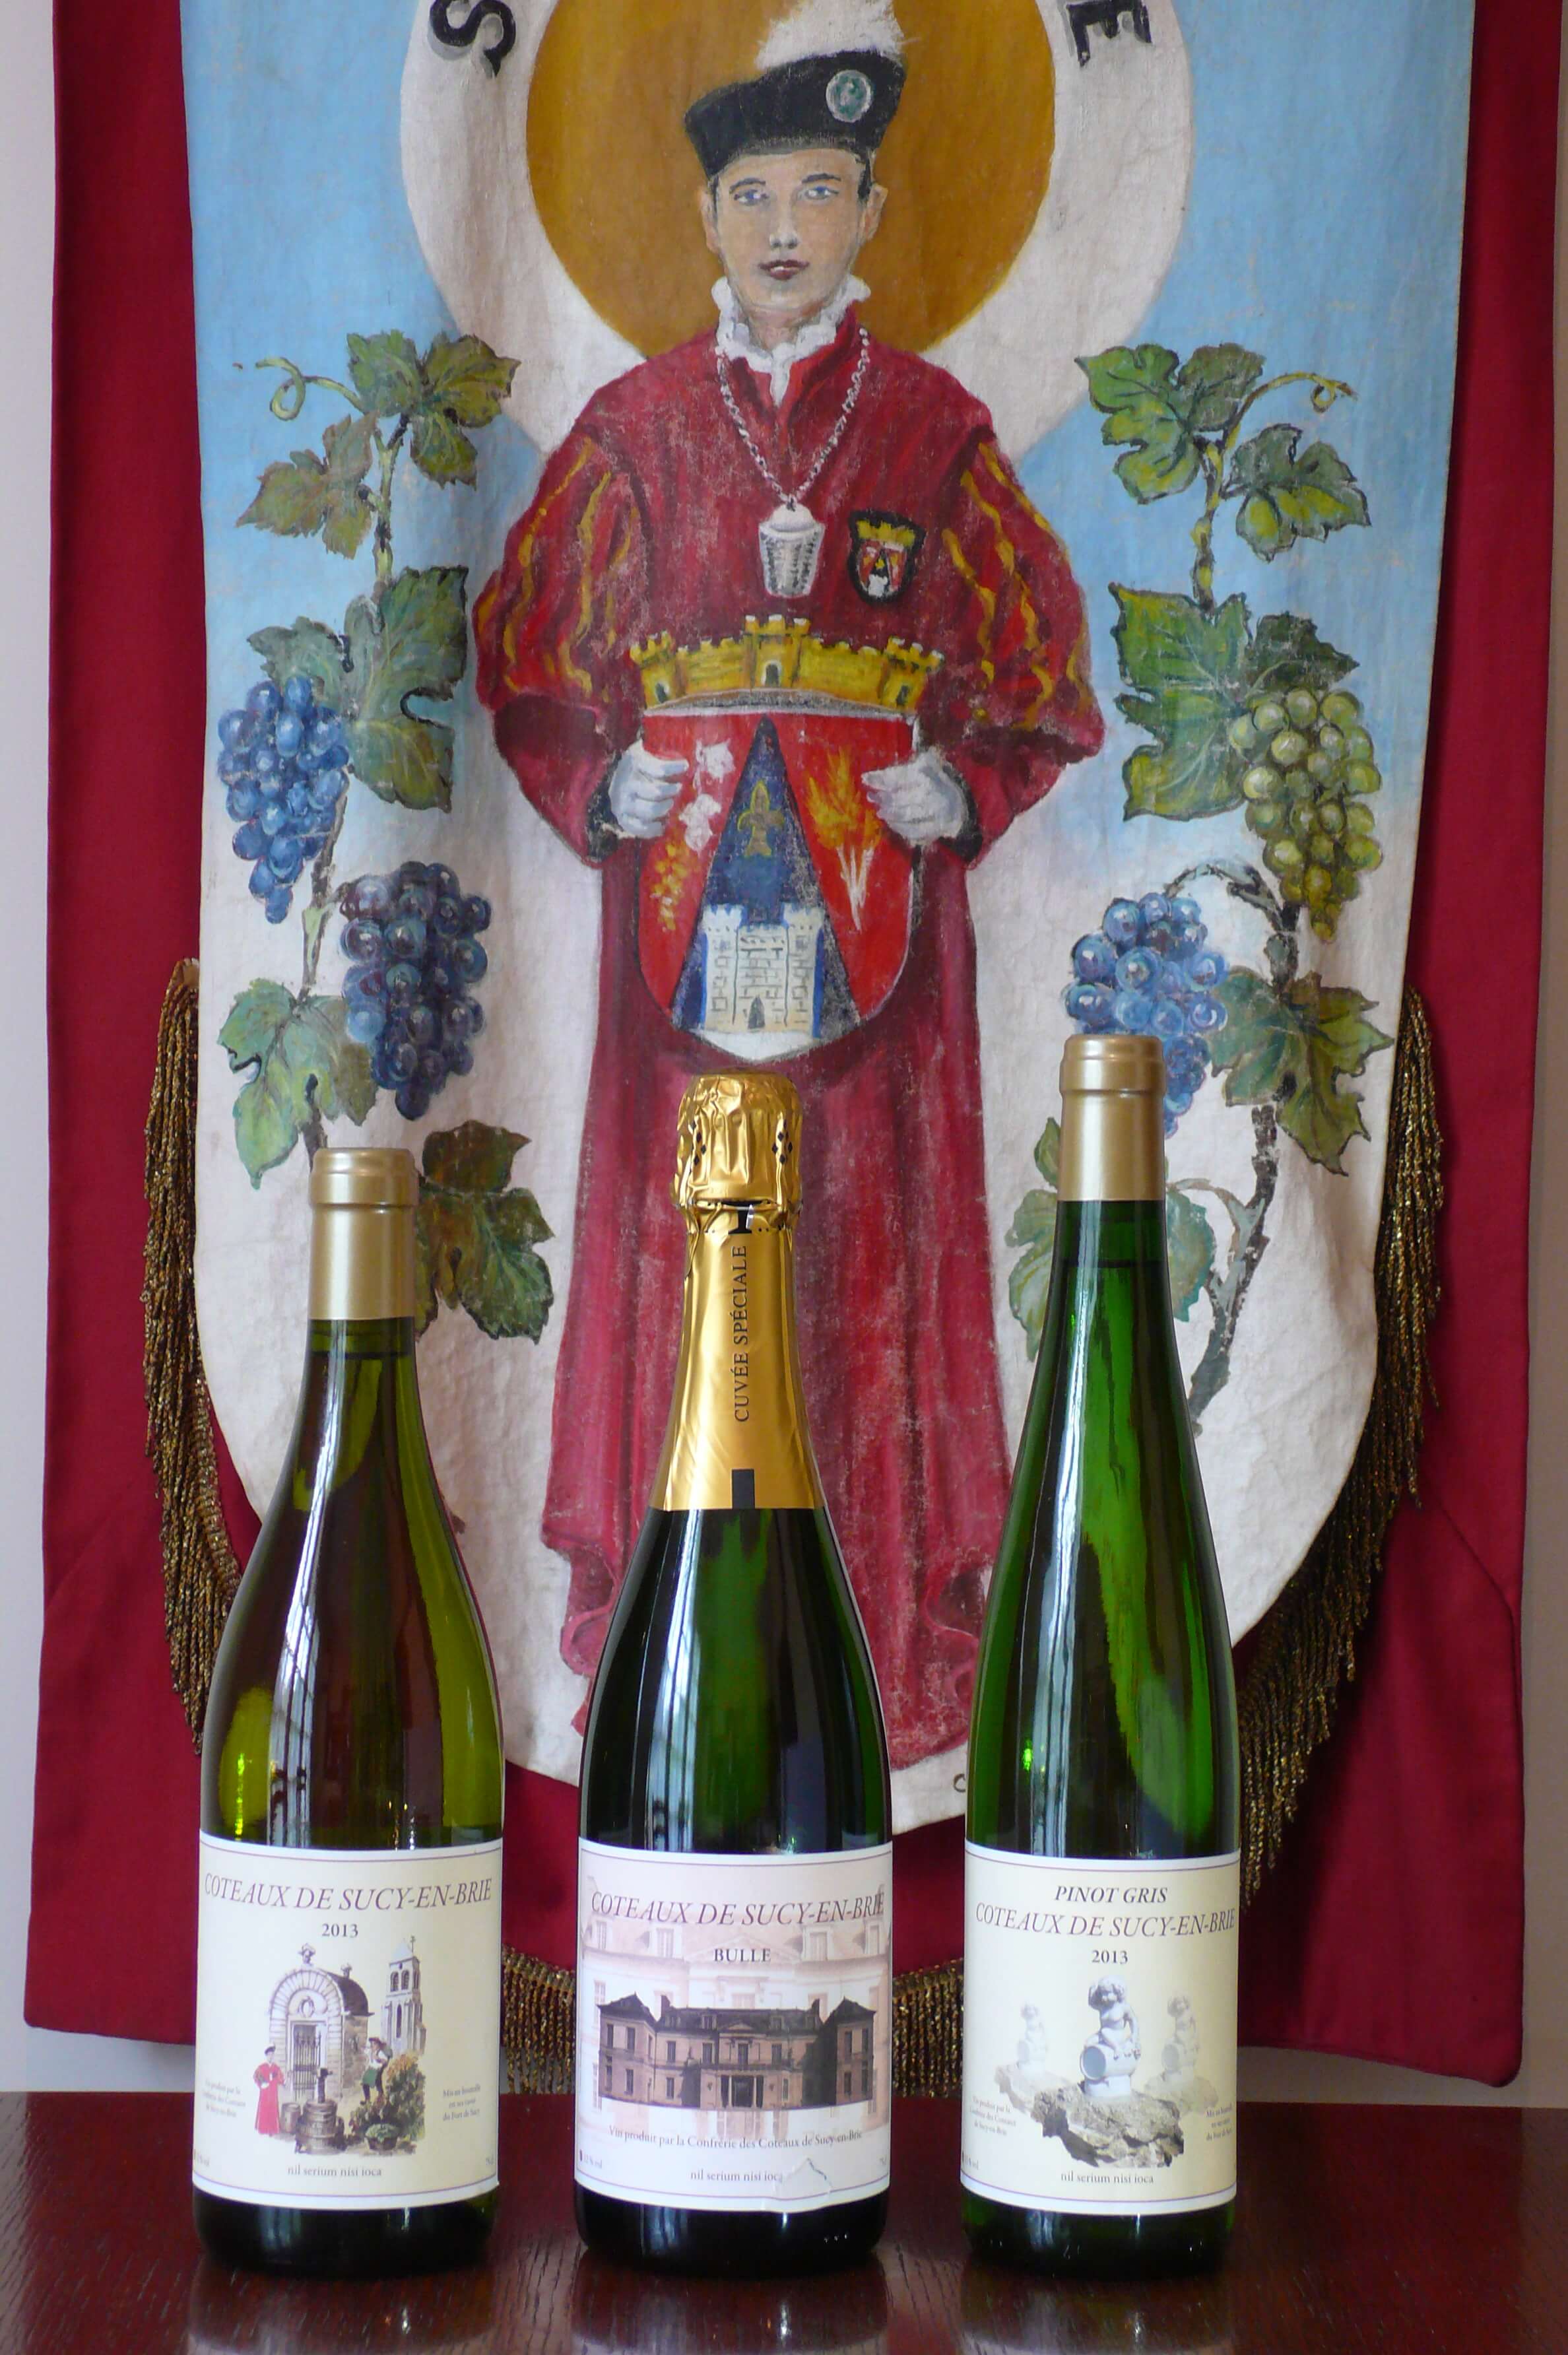 Les 3 bouteilles de vin